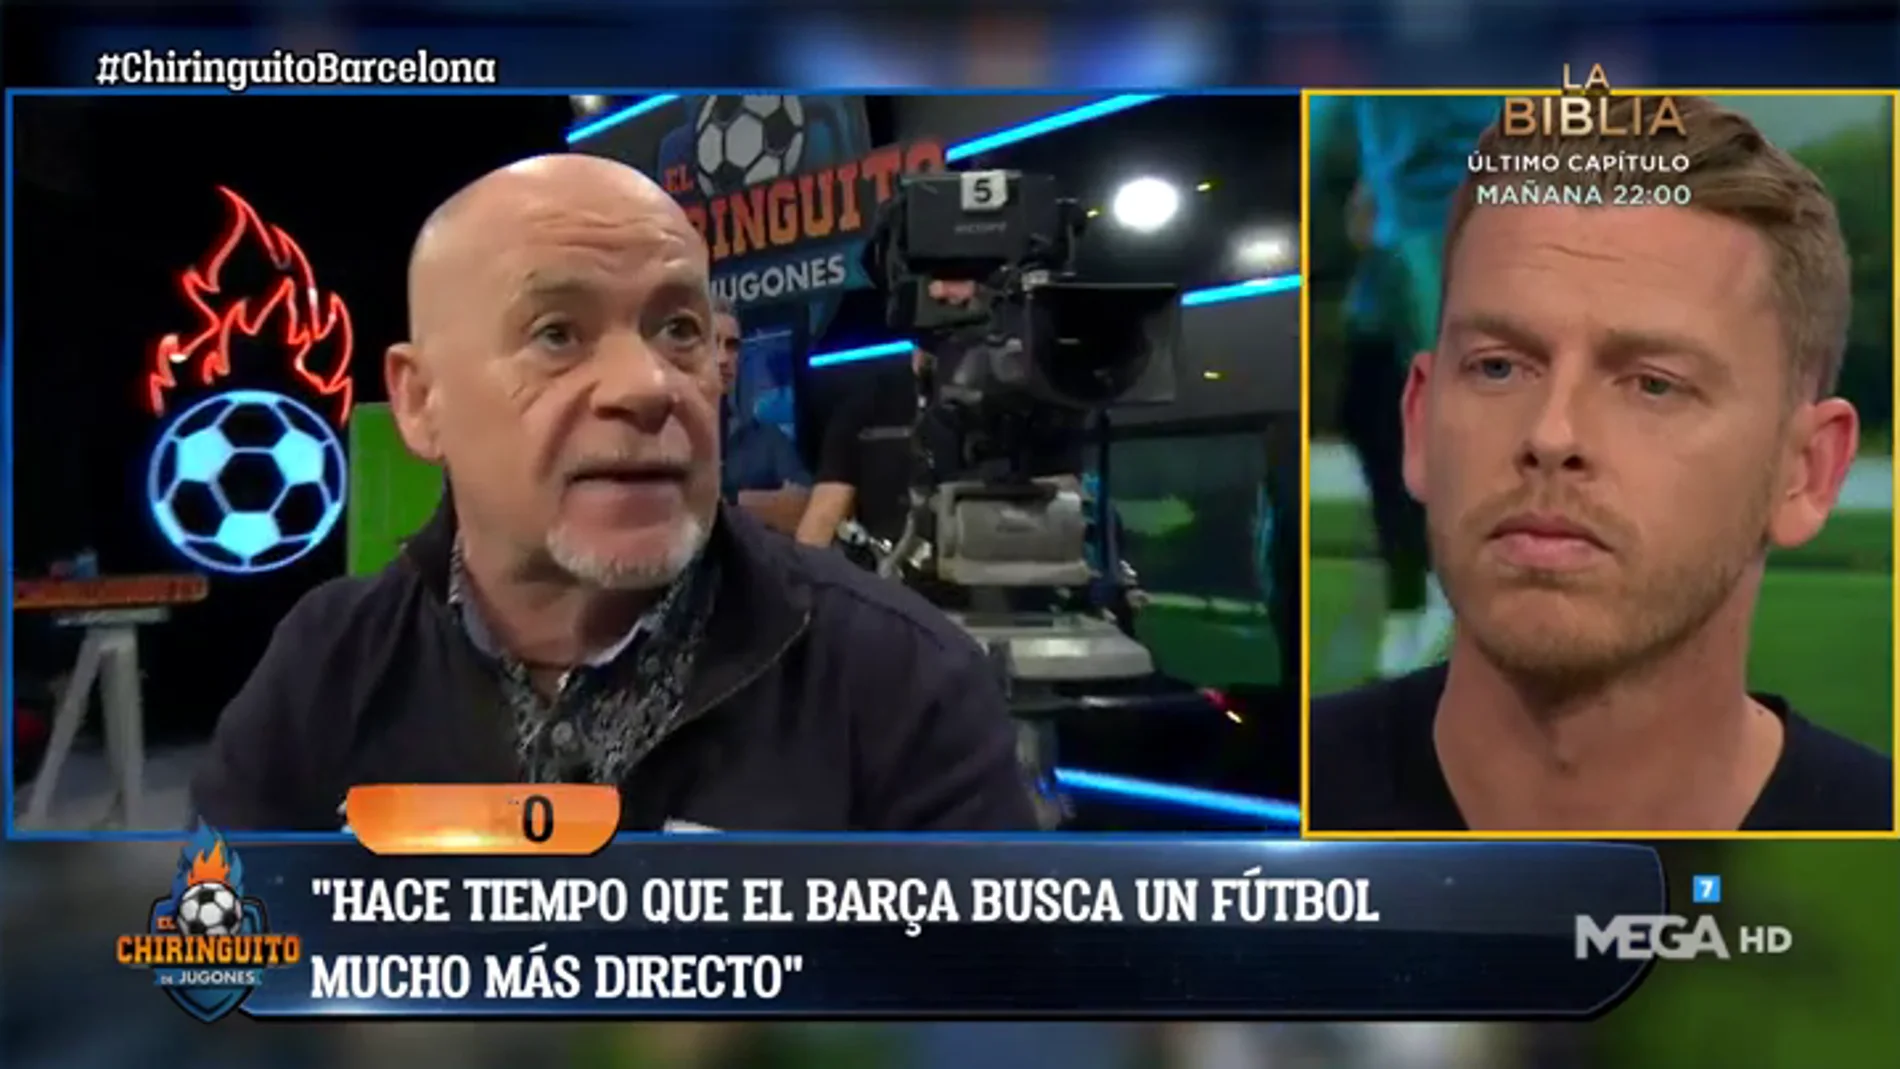 Alfredo Duro: "El Barça juega más directo. Sabe que es el camino para ganar los partidos importantes"